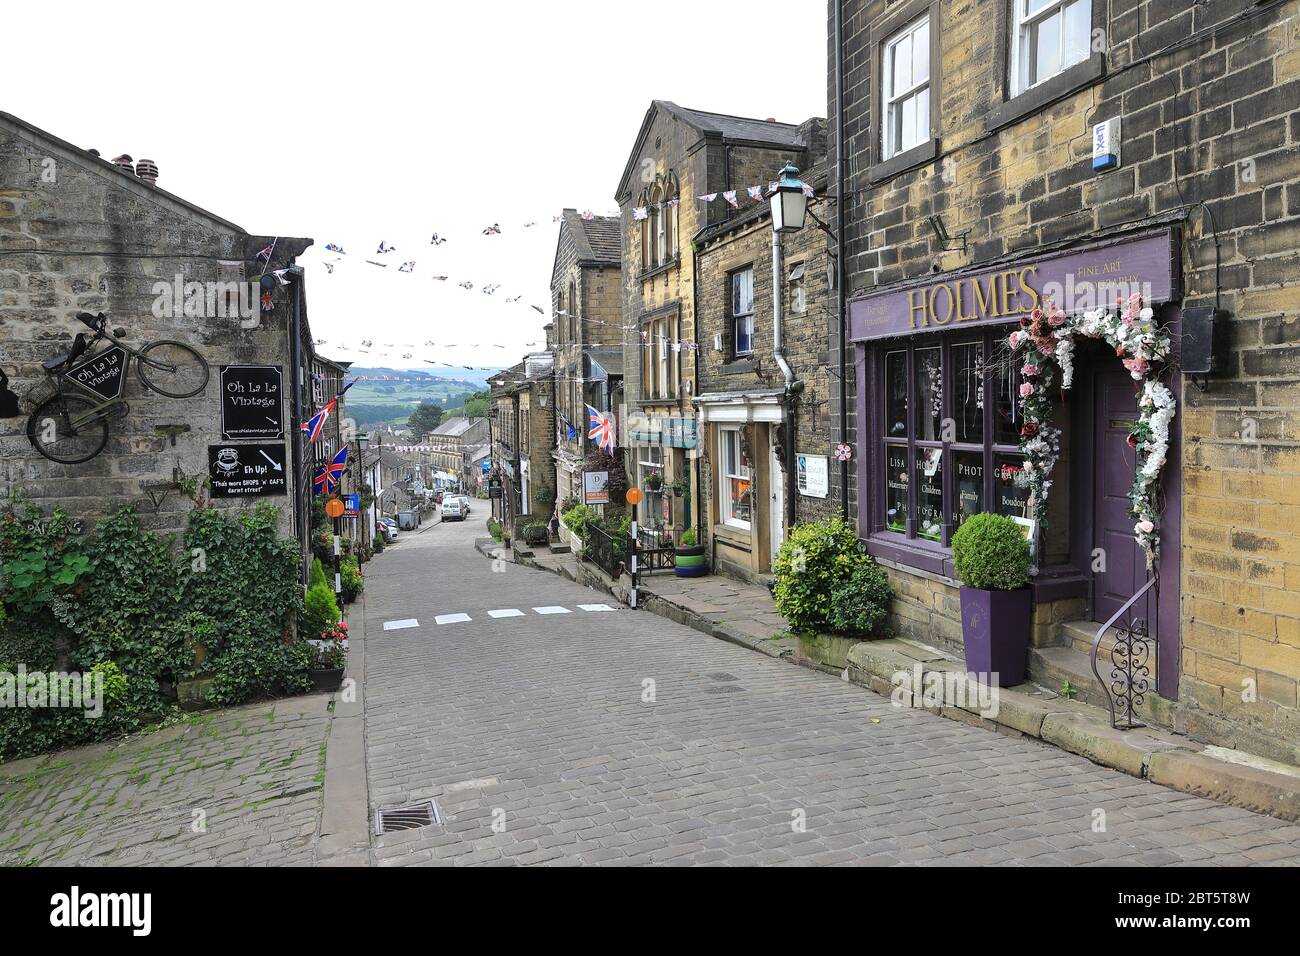 Die Aussicht auf die gepflasterte Hauptstraße in Haworth, West Yorkshire. Haworth war die Heimat der Bronte Schwestern und ist ein beliebtes Touristenziel Stockfoto